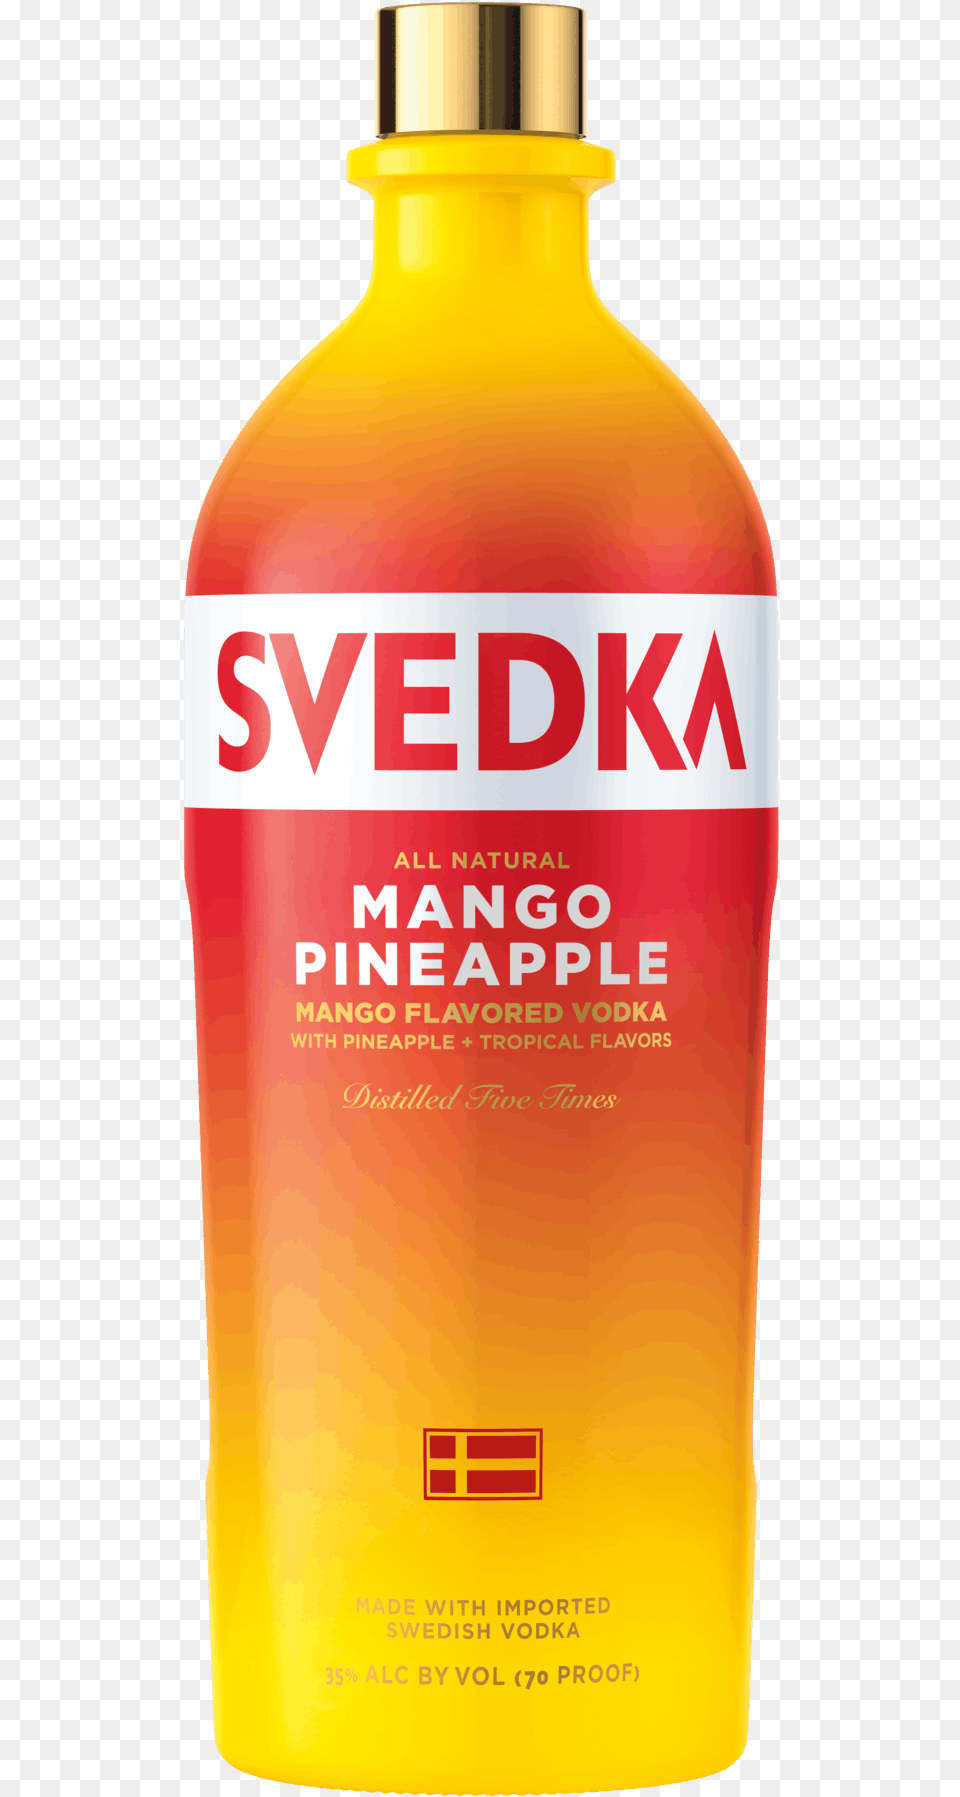 Svedka Mango Pineapple Vodka Bottle, Food, Ketchup, Beverage, Juice Free Png